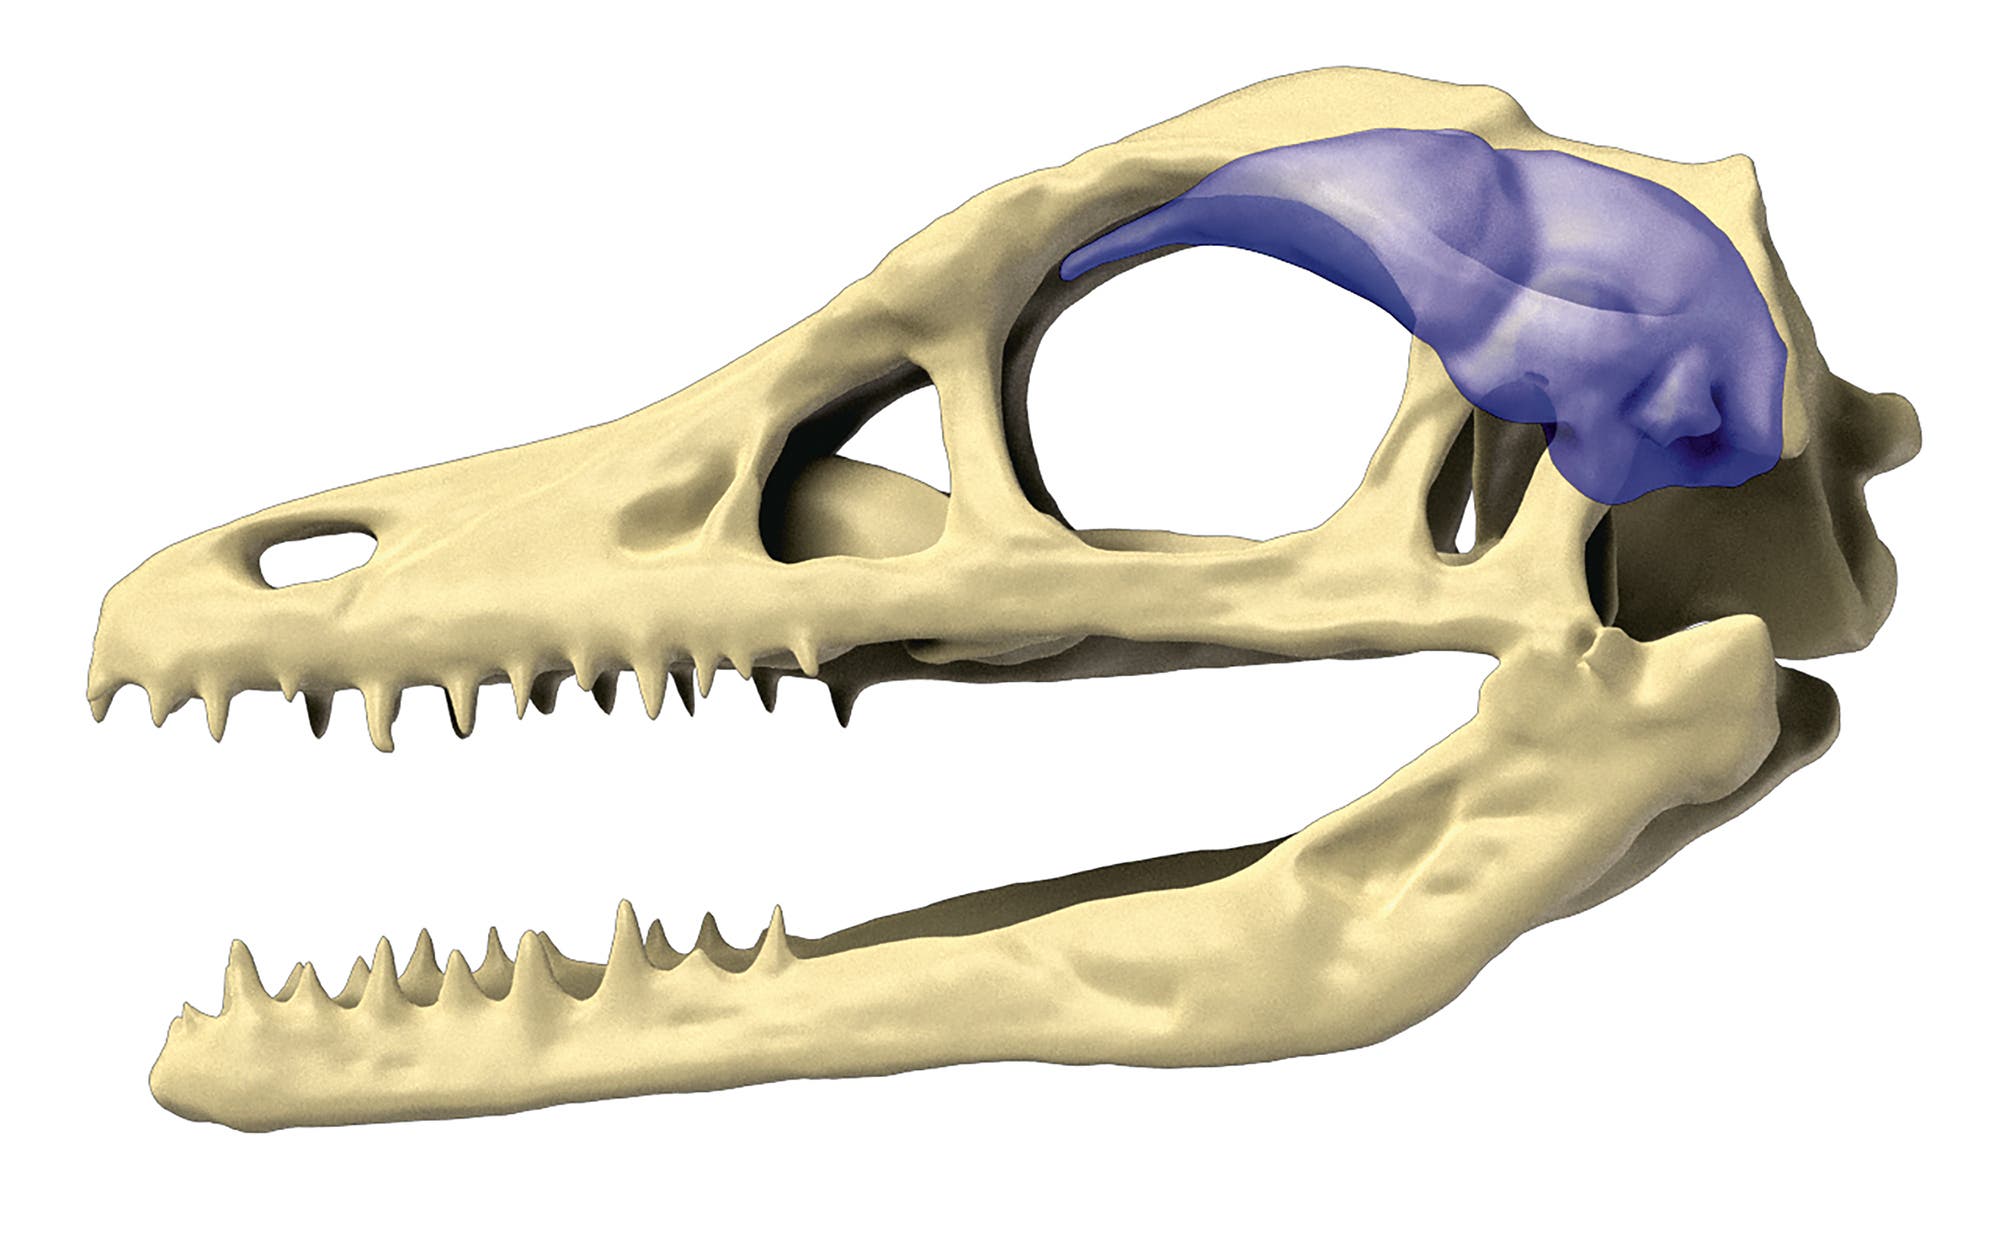 Natural and virtual skull casts